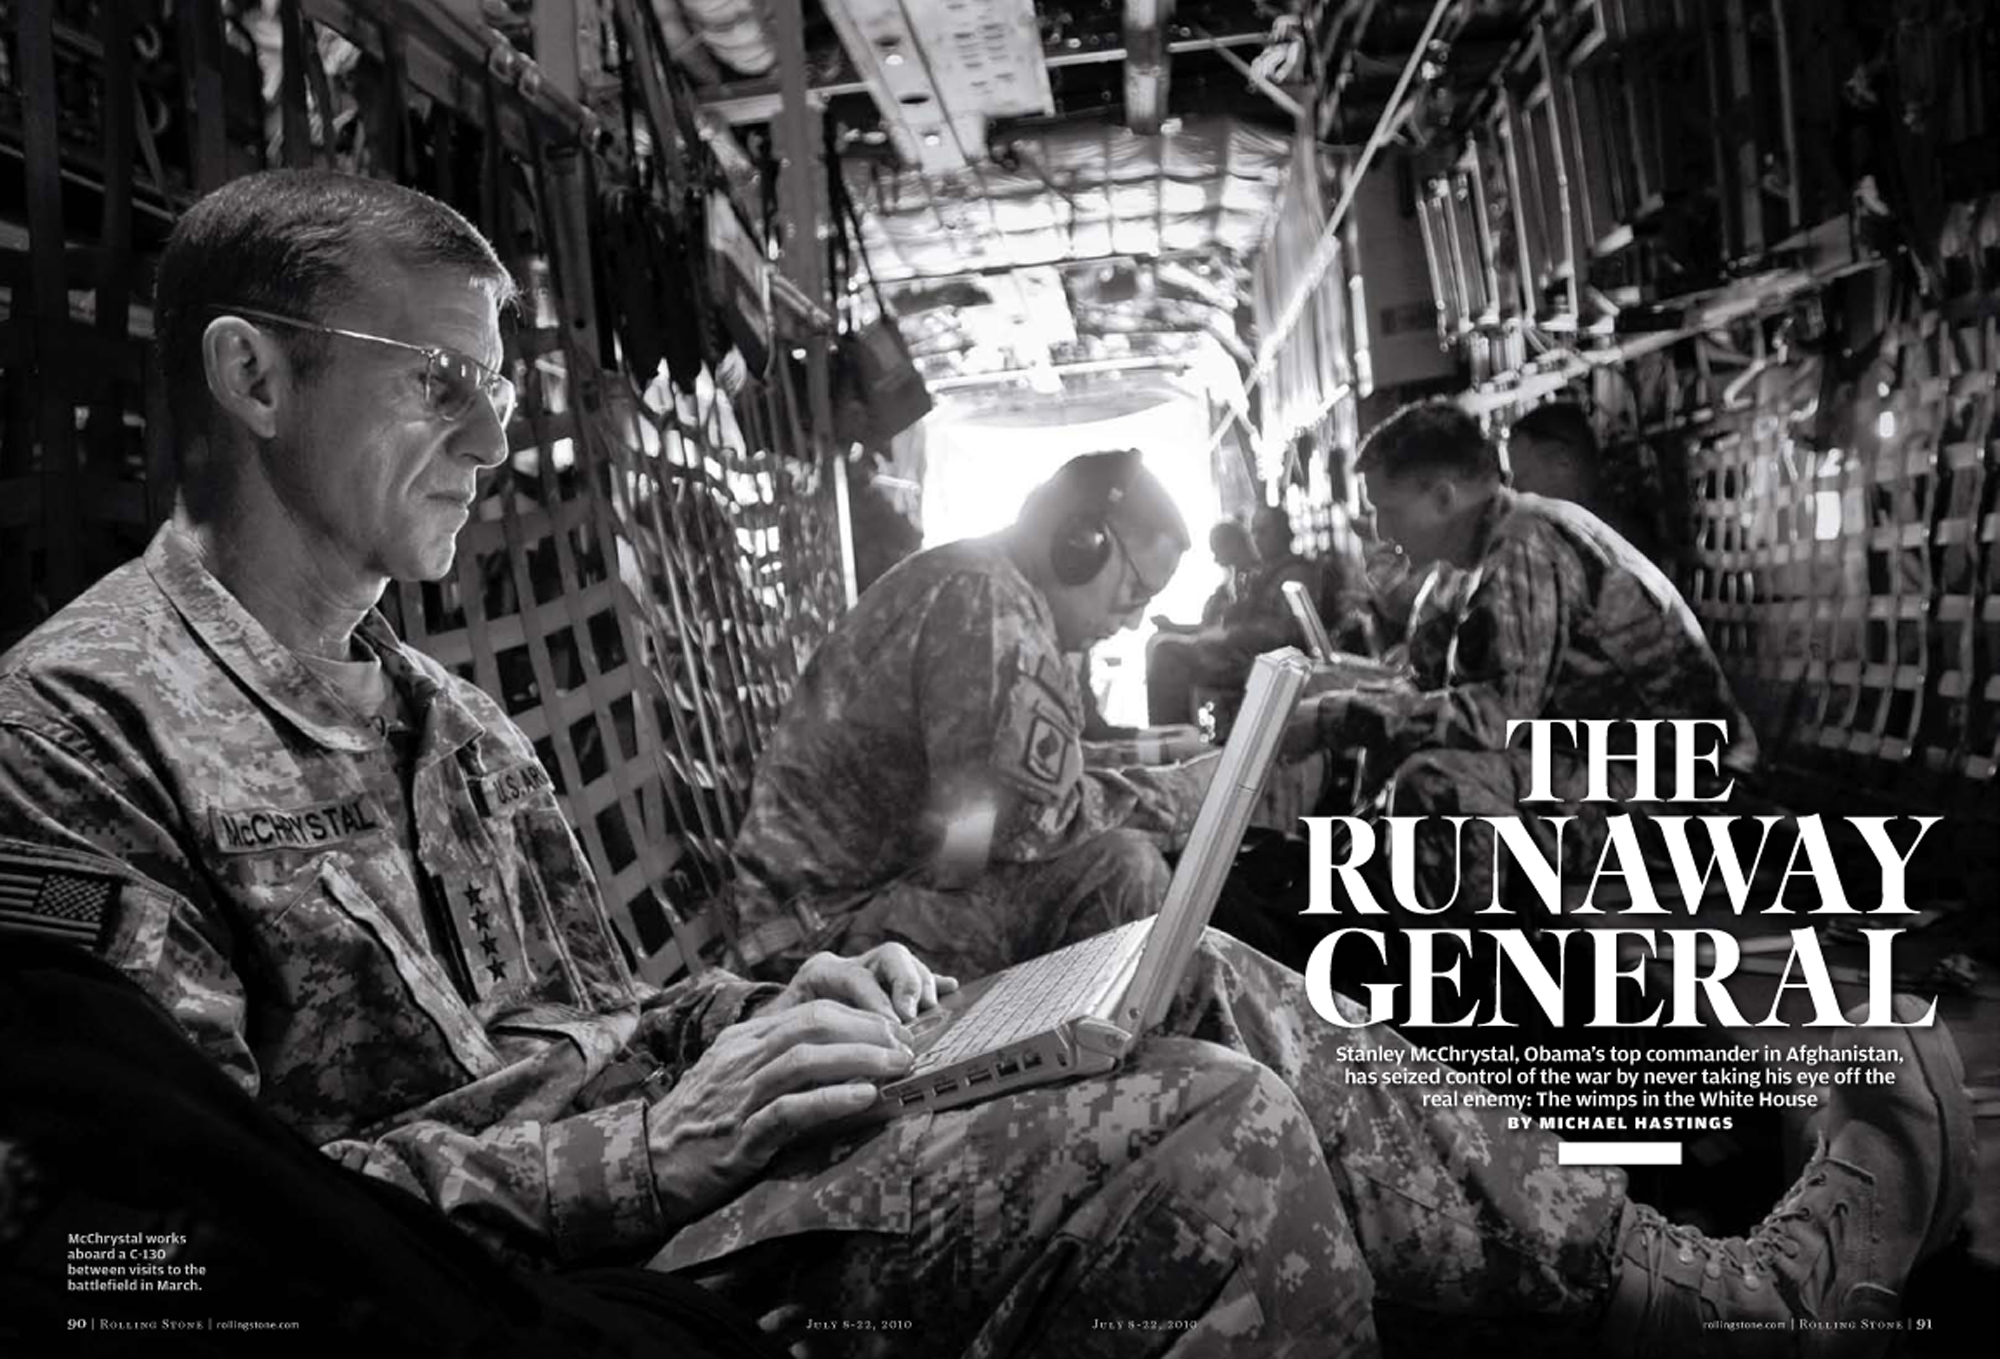 Den amerikanska generalen ligger risigt till efter att ha kritiserat regeringen i artikeln "The Runaway General".